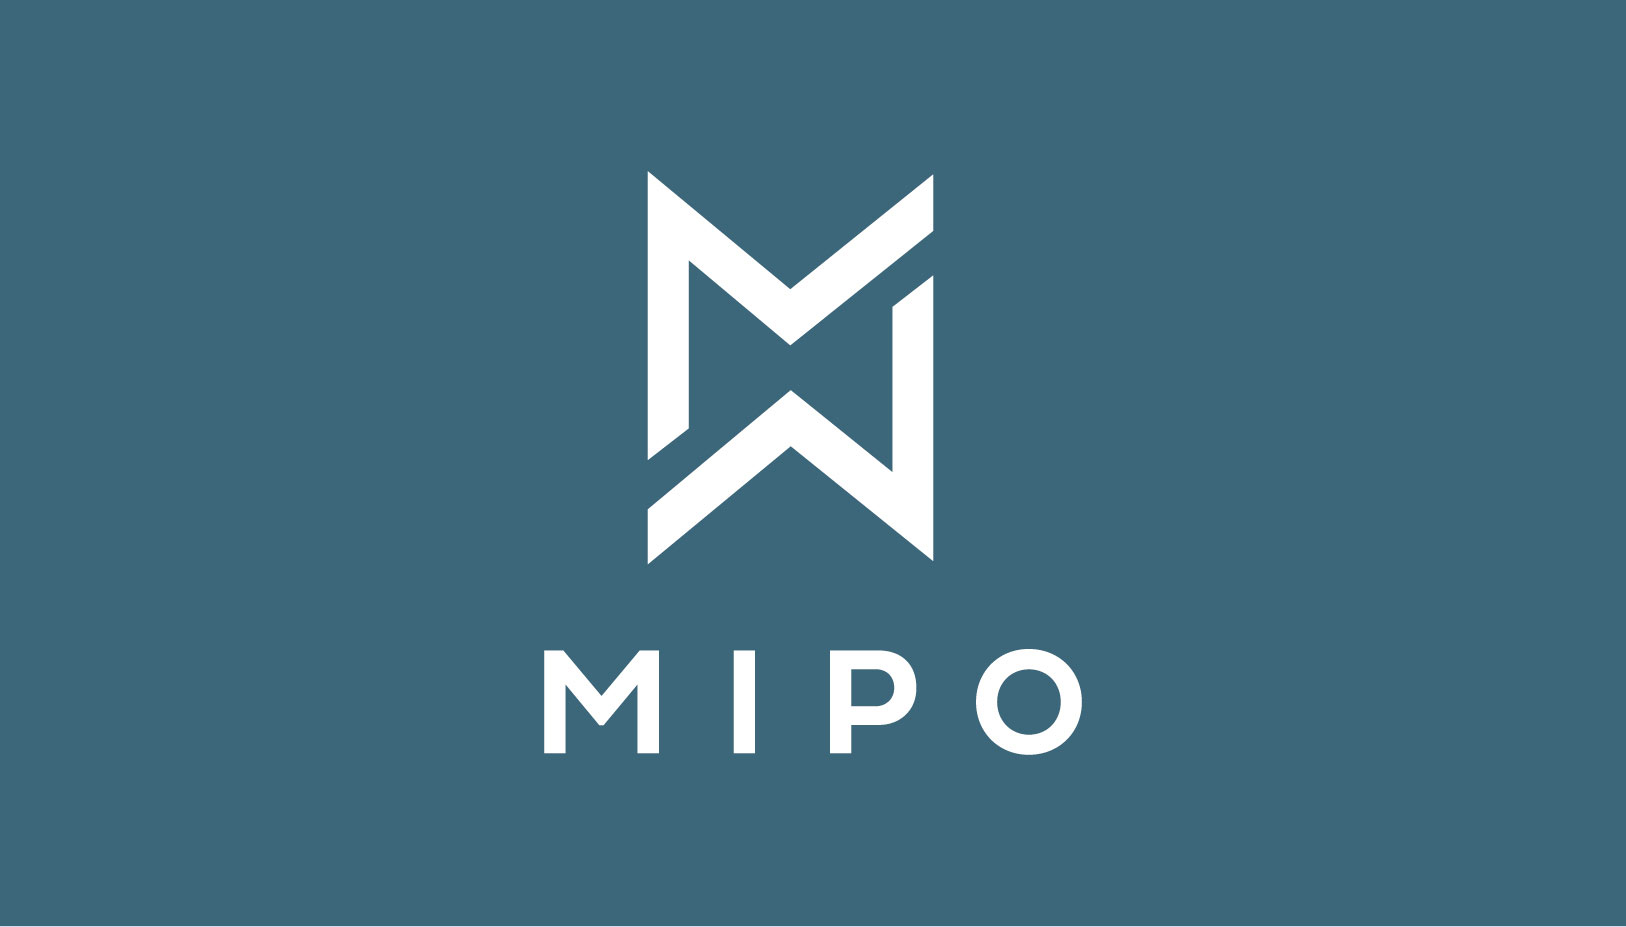 paolo_salmaso_Mipo_musica_logo_web_design_venezia_grafico_graphic_designer - Simple Sign